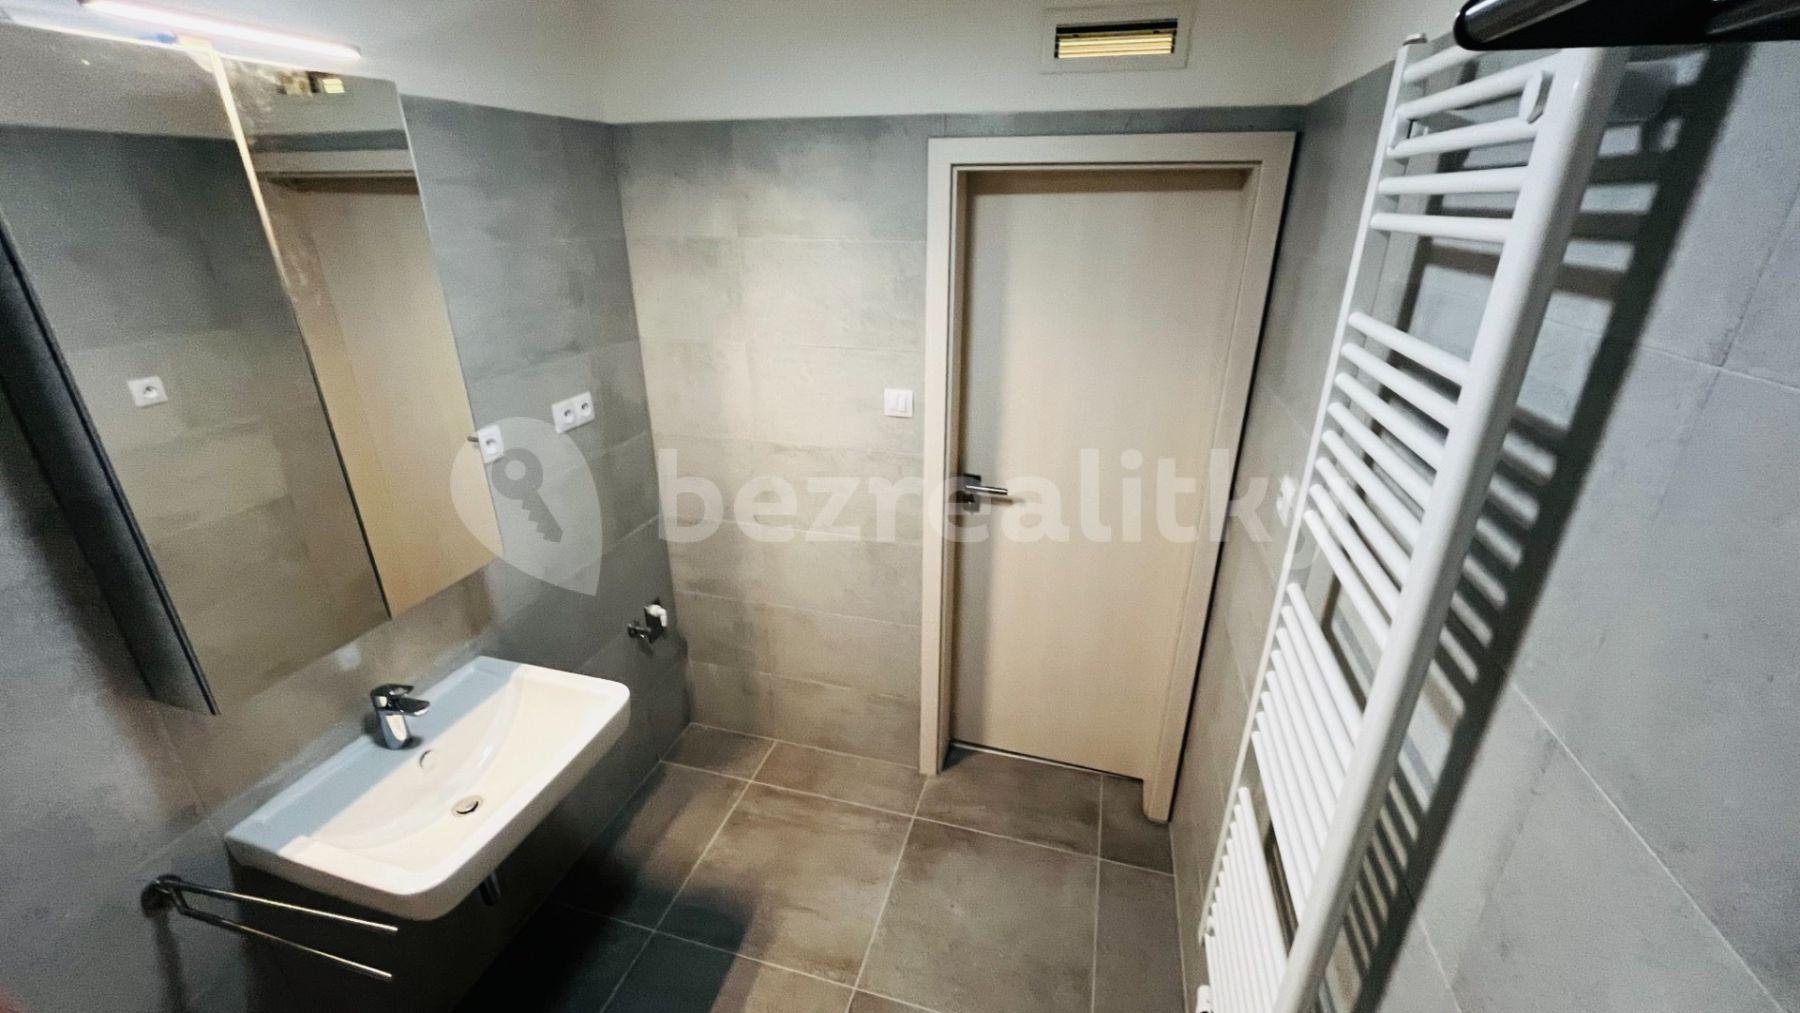 1 bedroom with open-plan kitchen flat to rent, 61 m², Sportovní, Brno, Jihomoravský Region